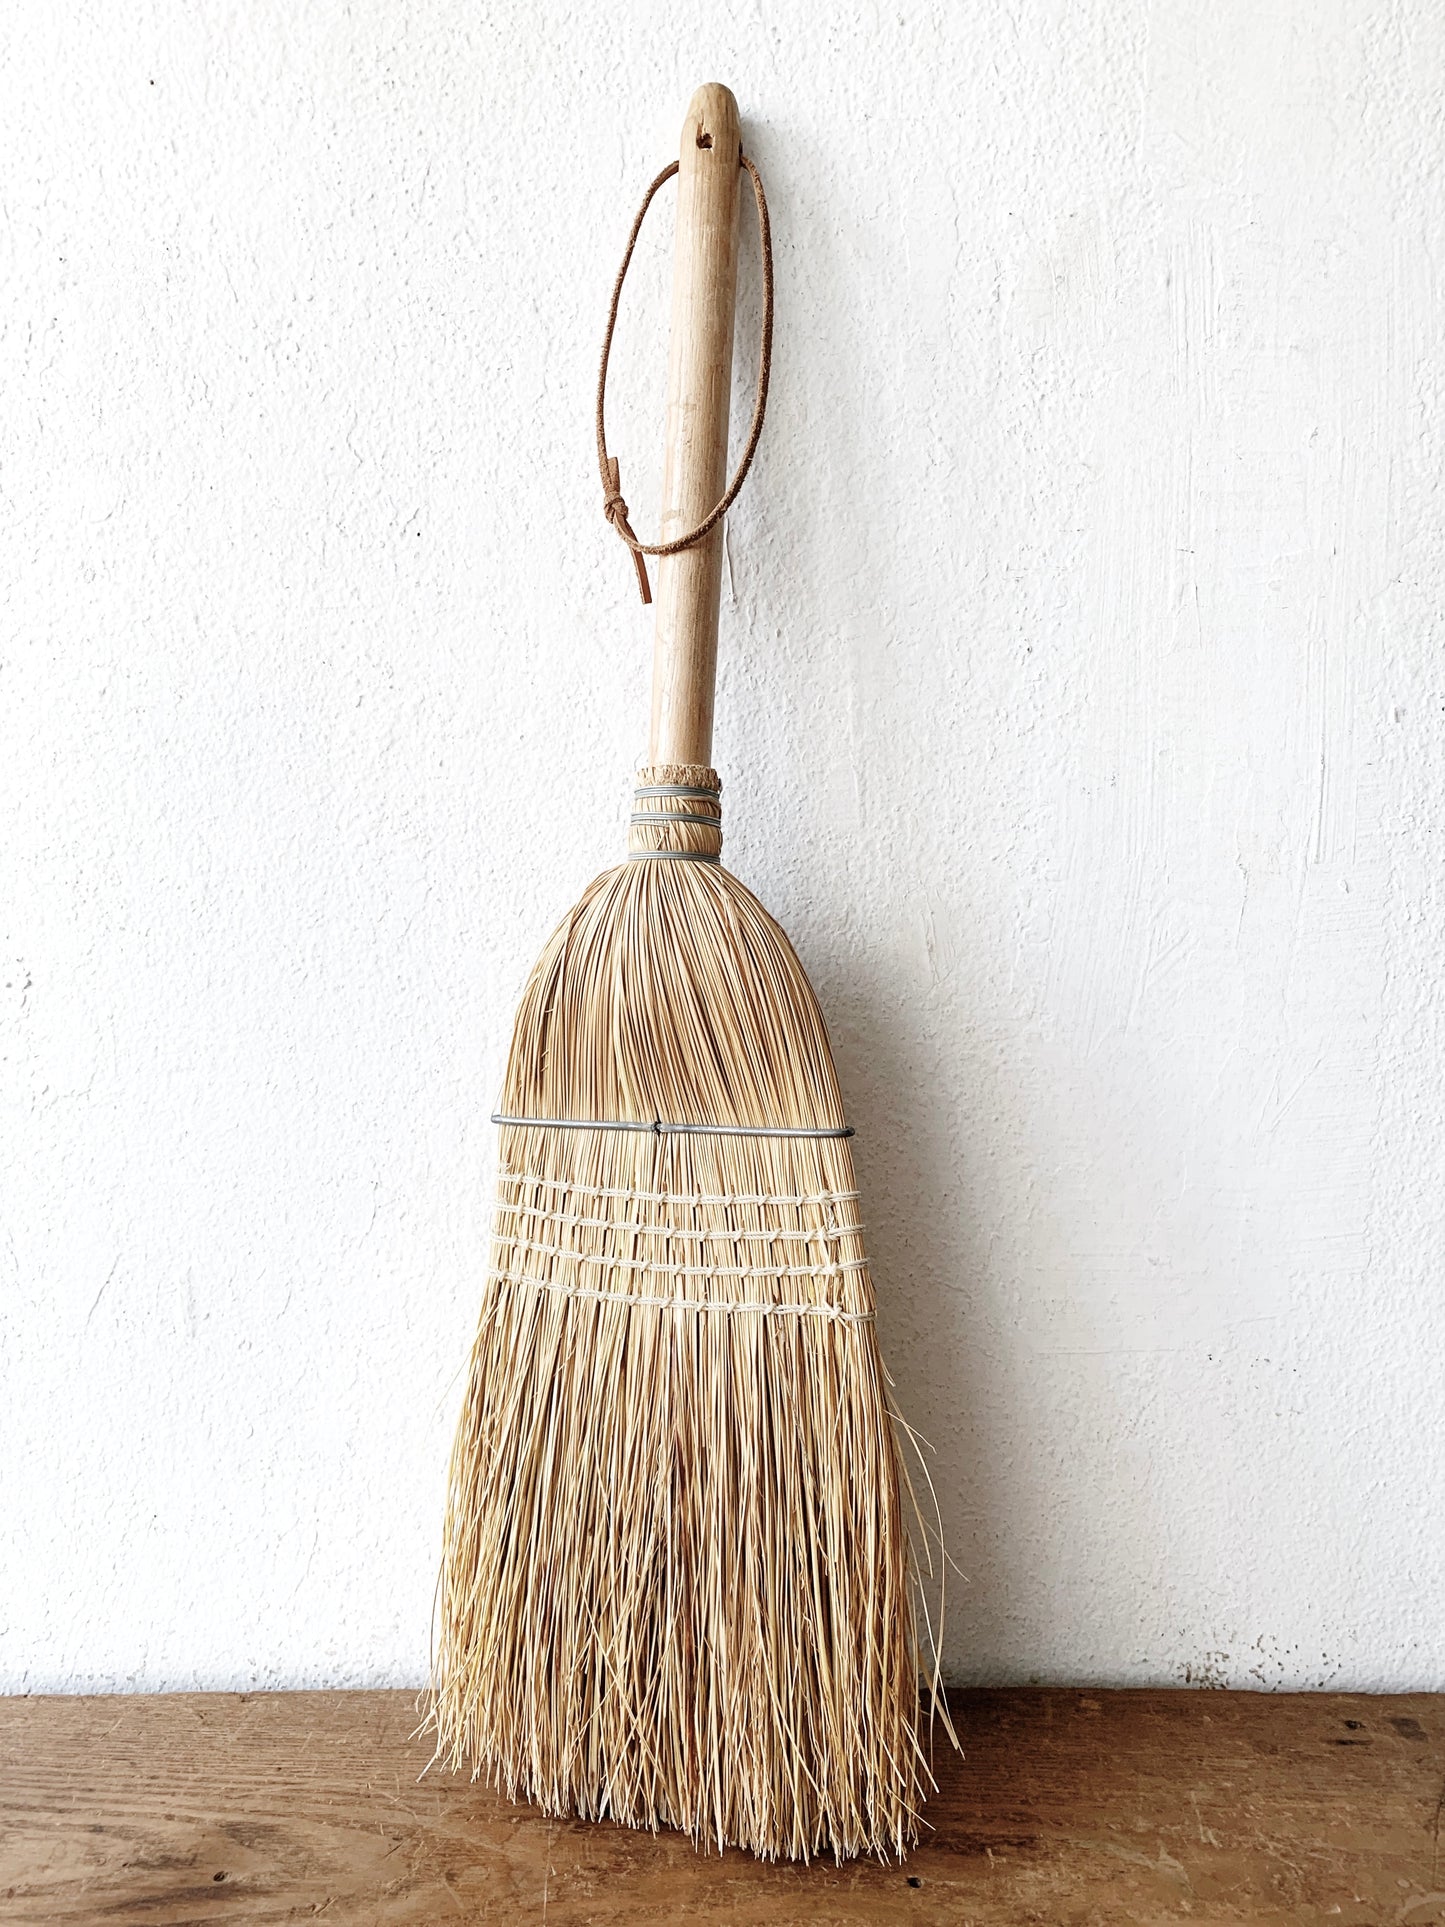 Handmade Hearth Broom